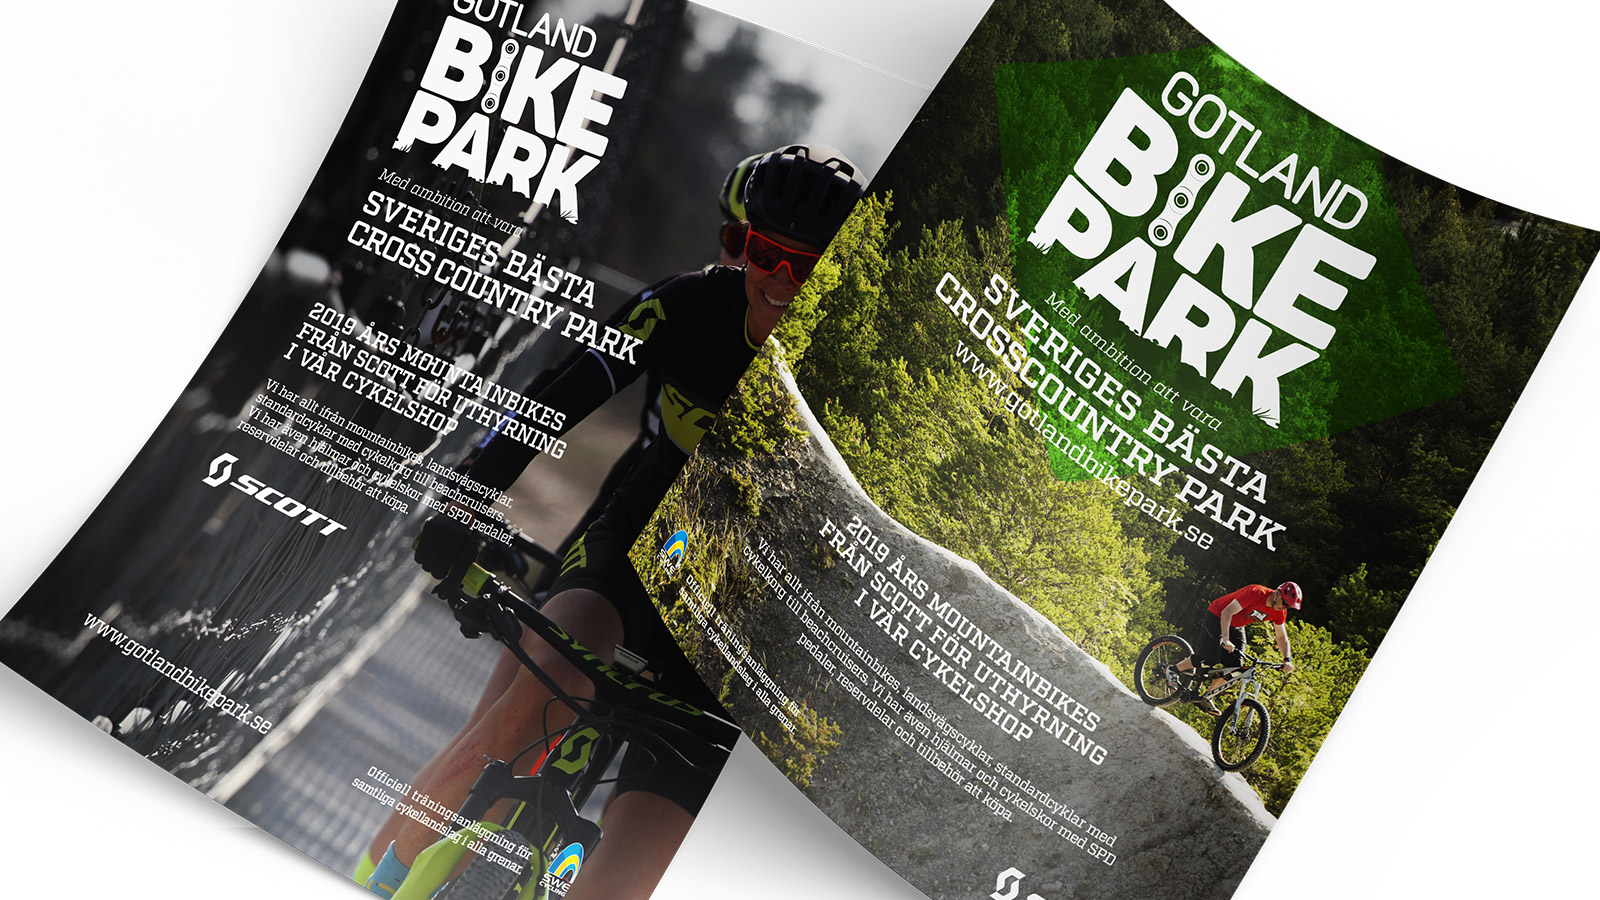 Gotland Bike Park Annonser